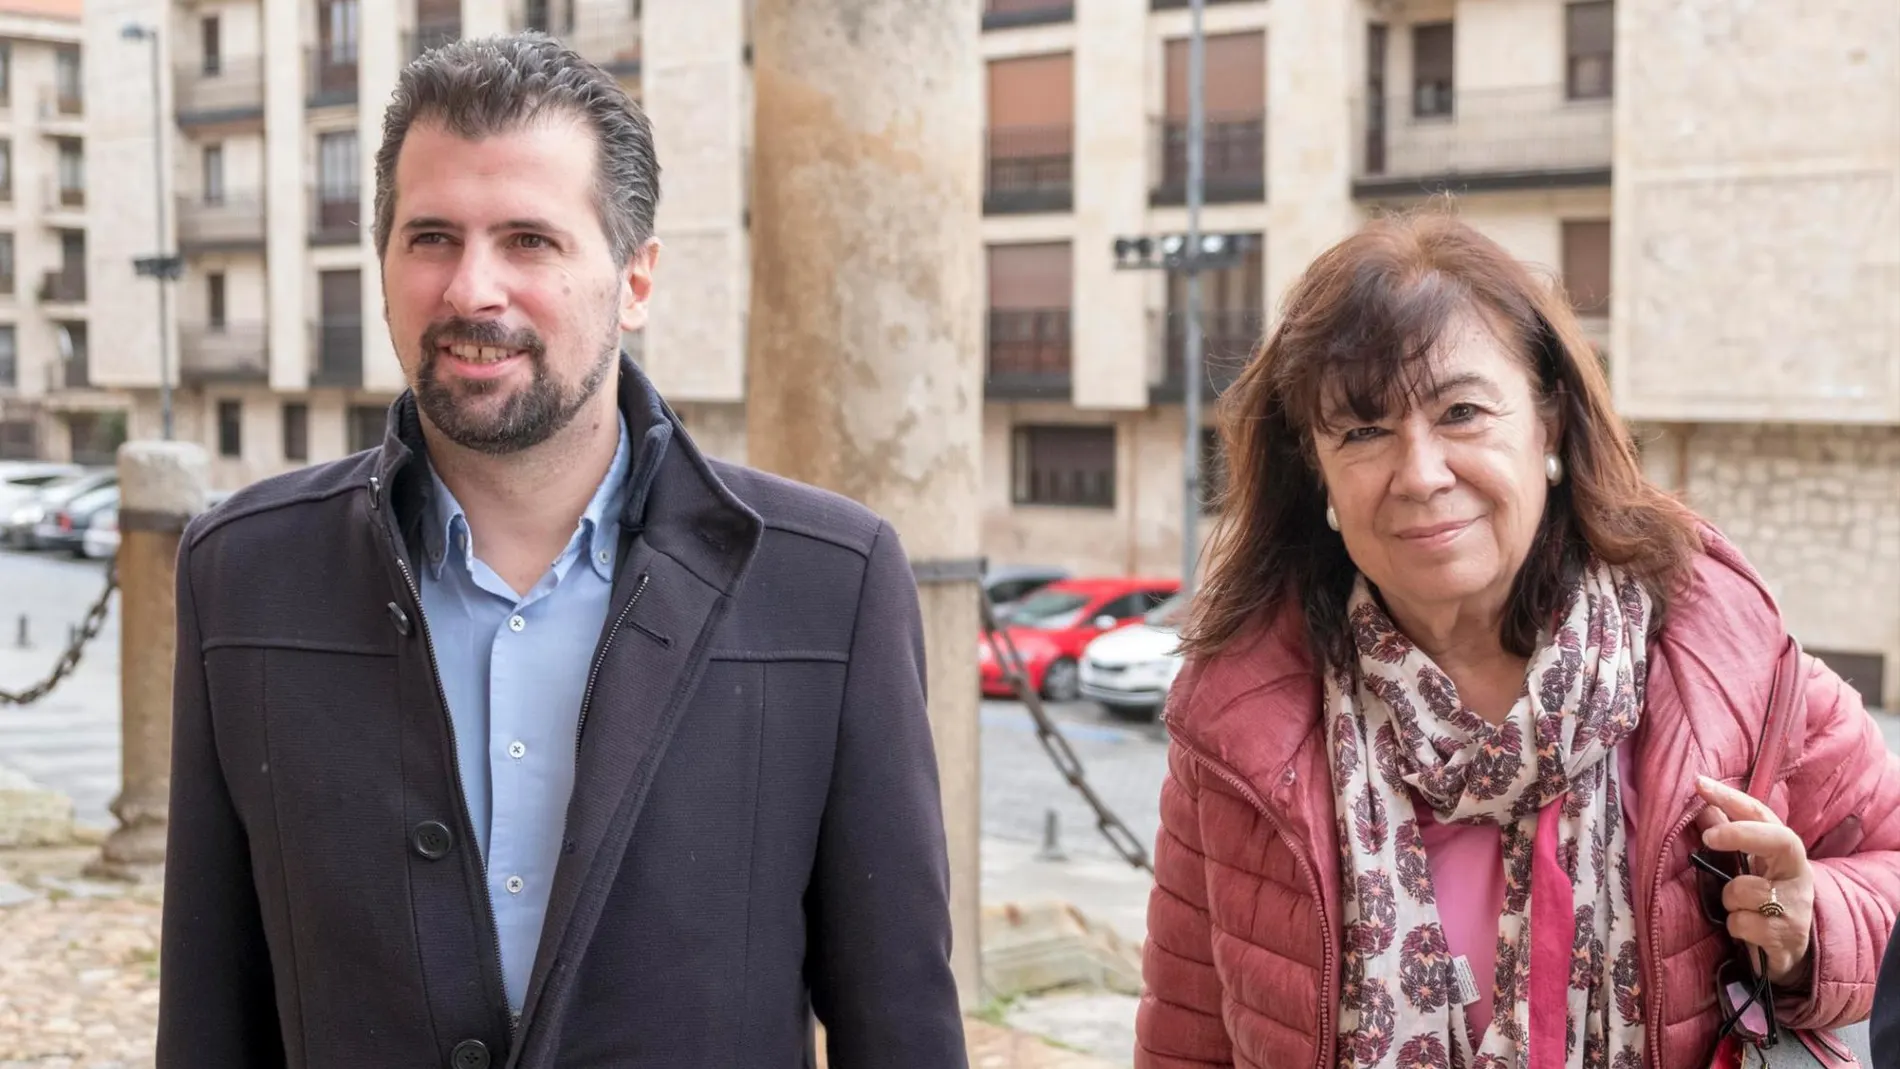 La presidenta del PSOE, Cristina Narbona, y el secretario general del PSCyL, Luis Tudanca, participan en el acto homenaje a los socialistas salmantinos